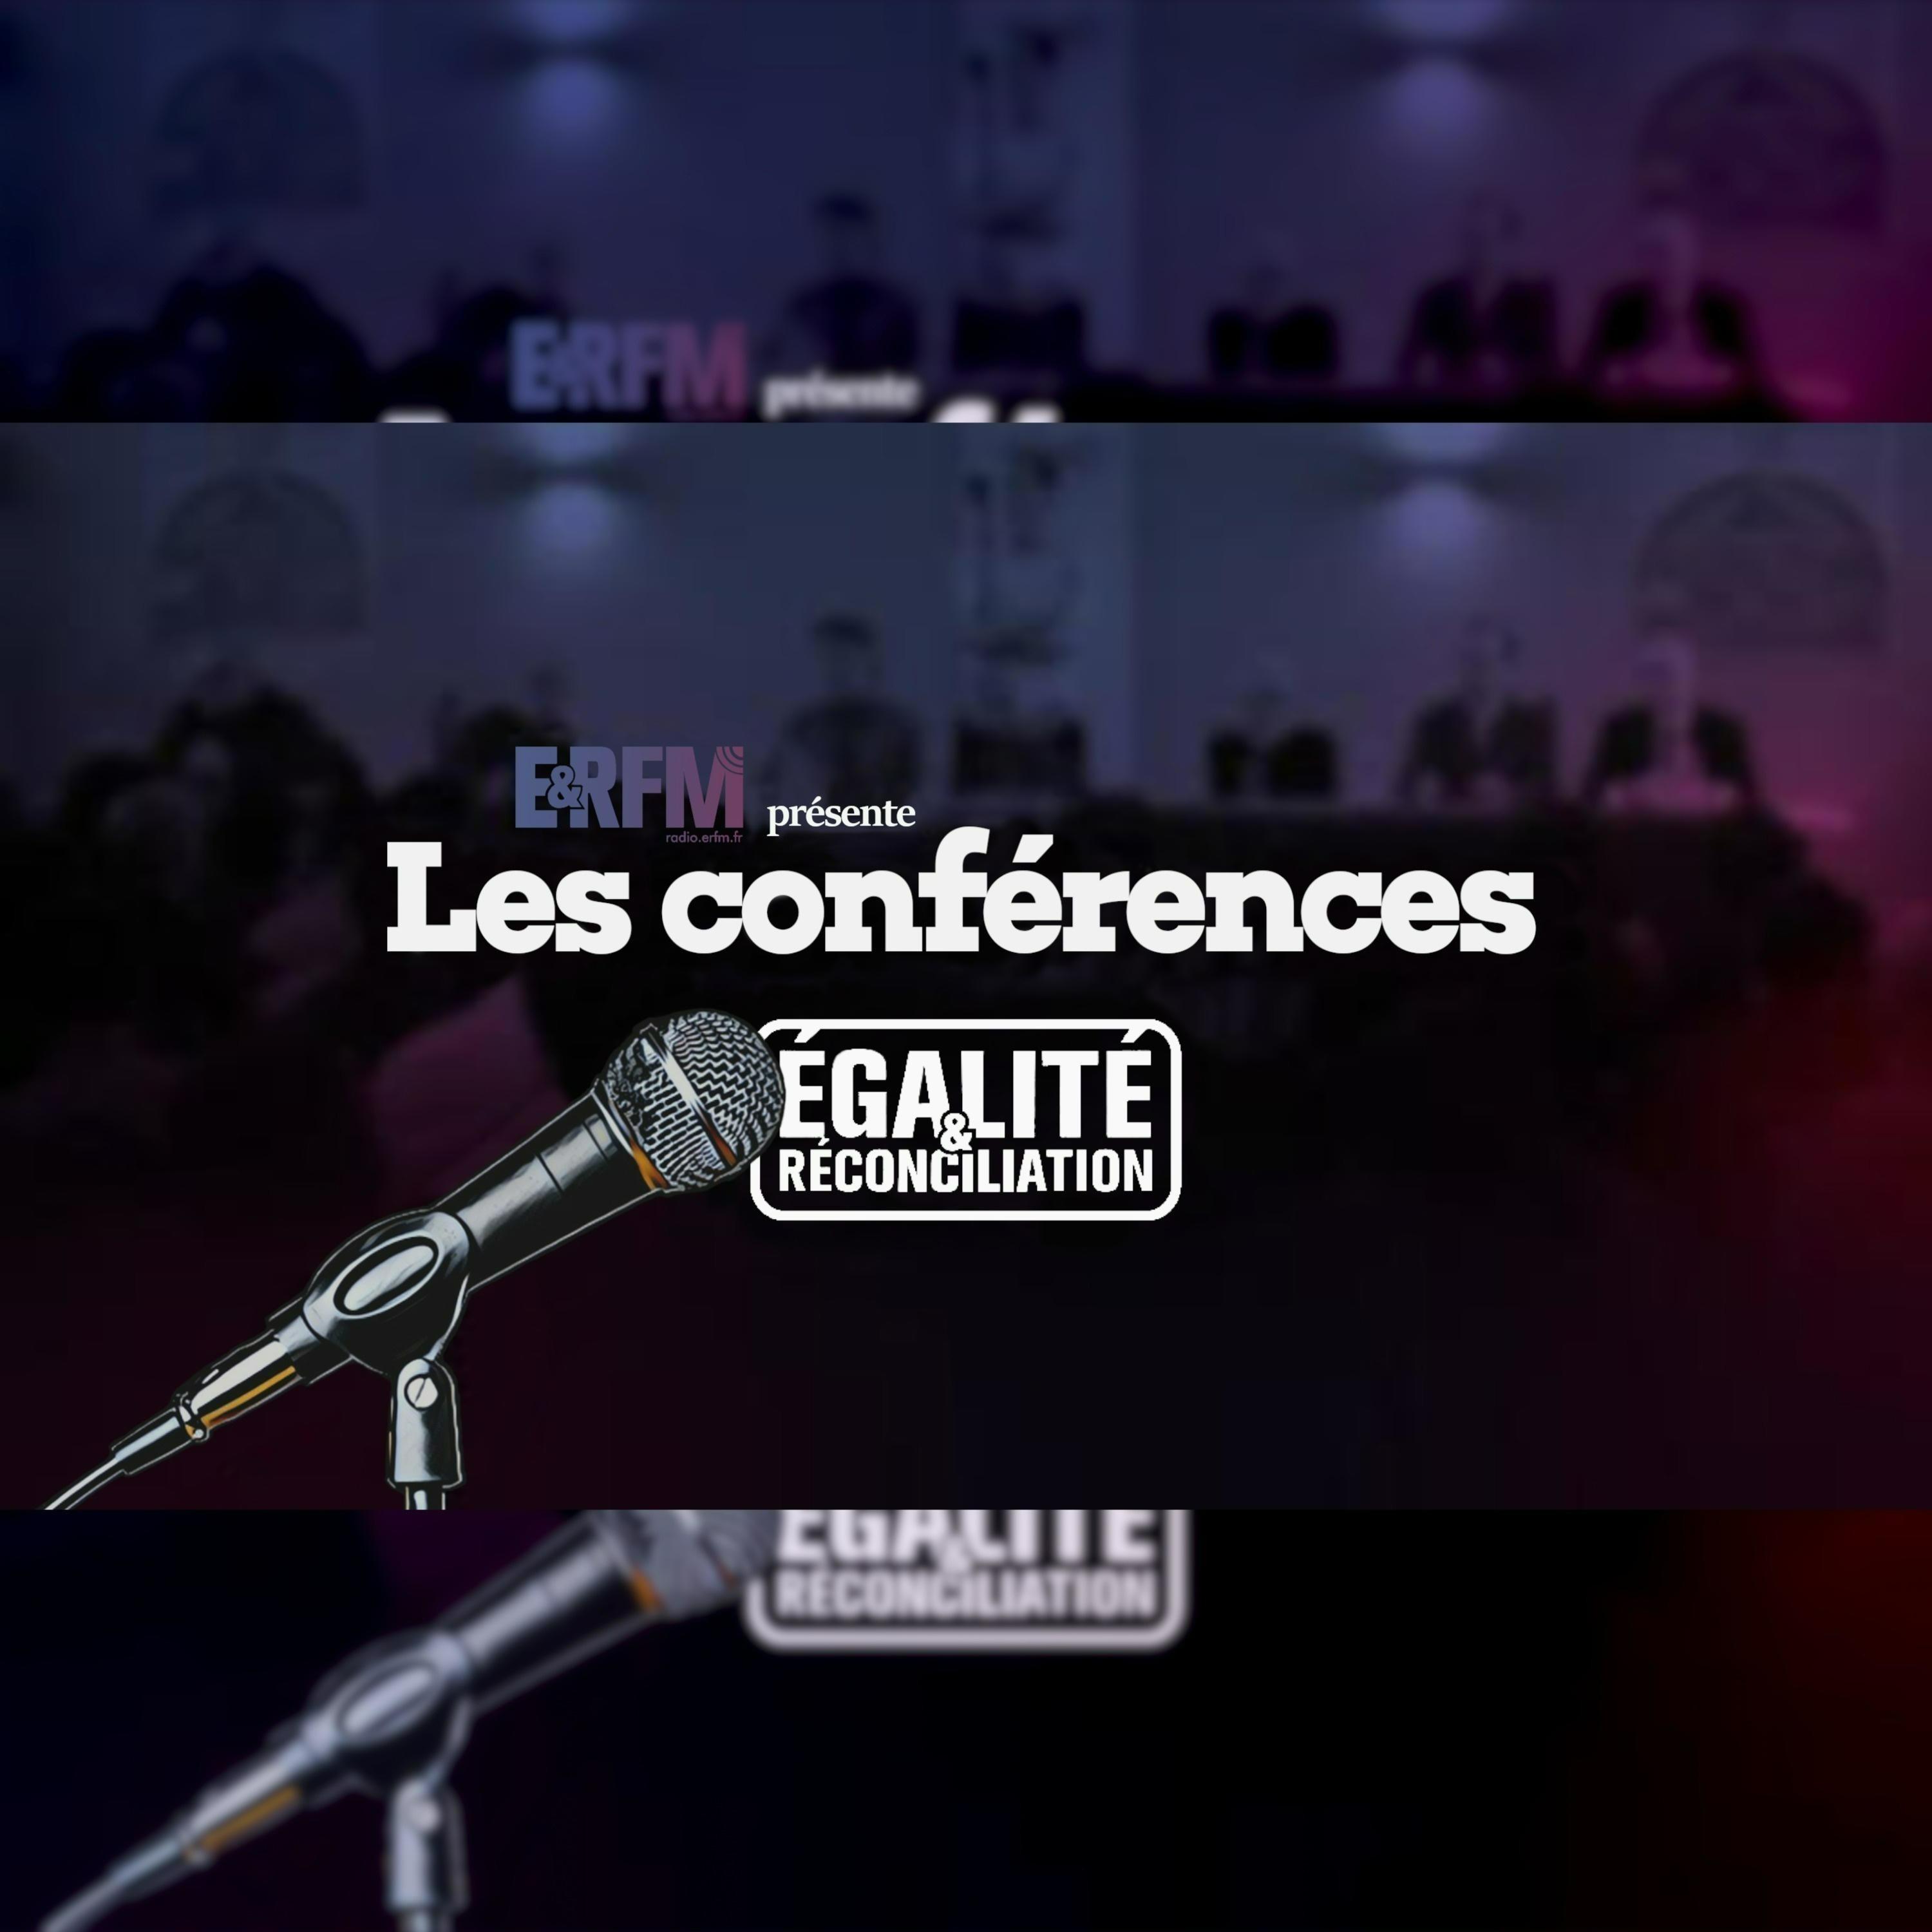 Conférence de Pierre de Brague Nice le 13 février 2016 - Partie 03 